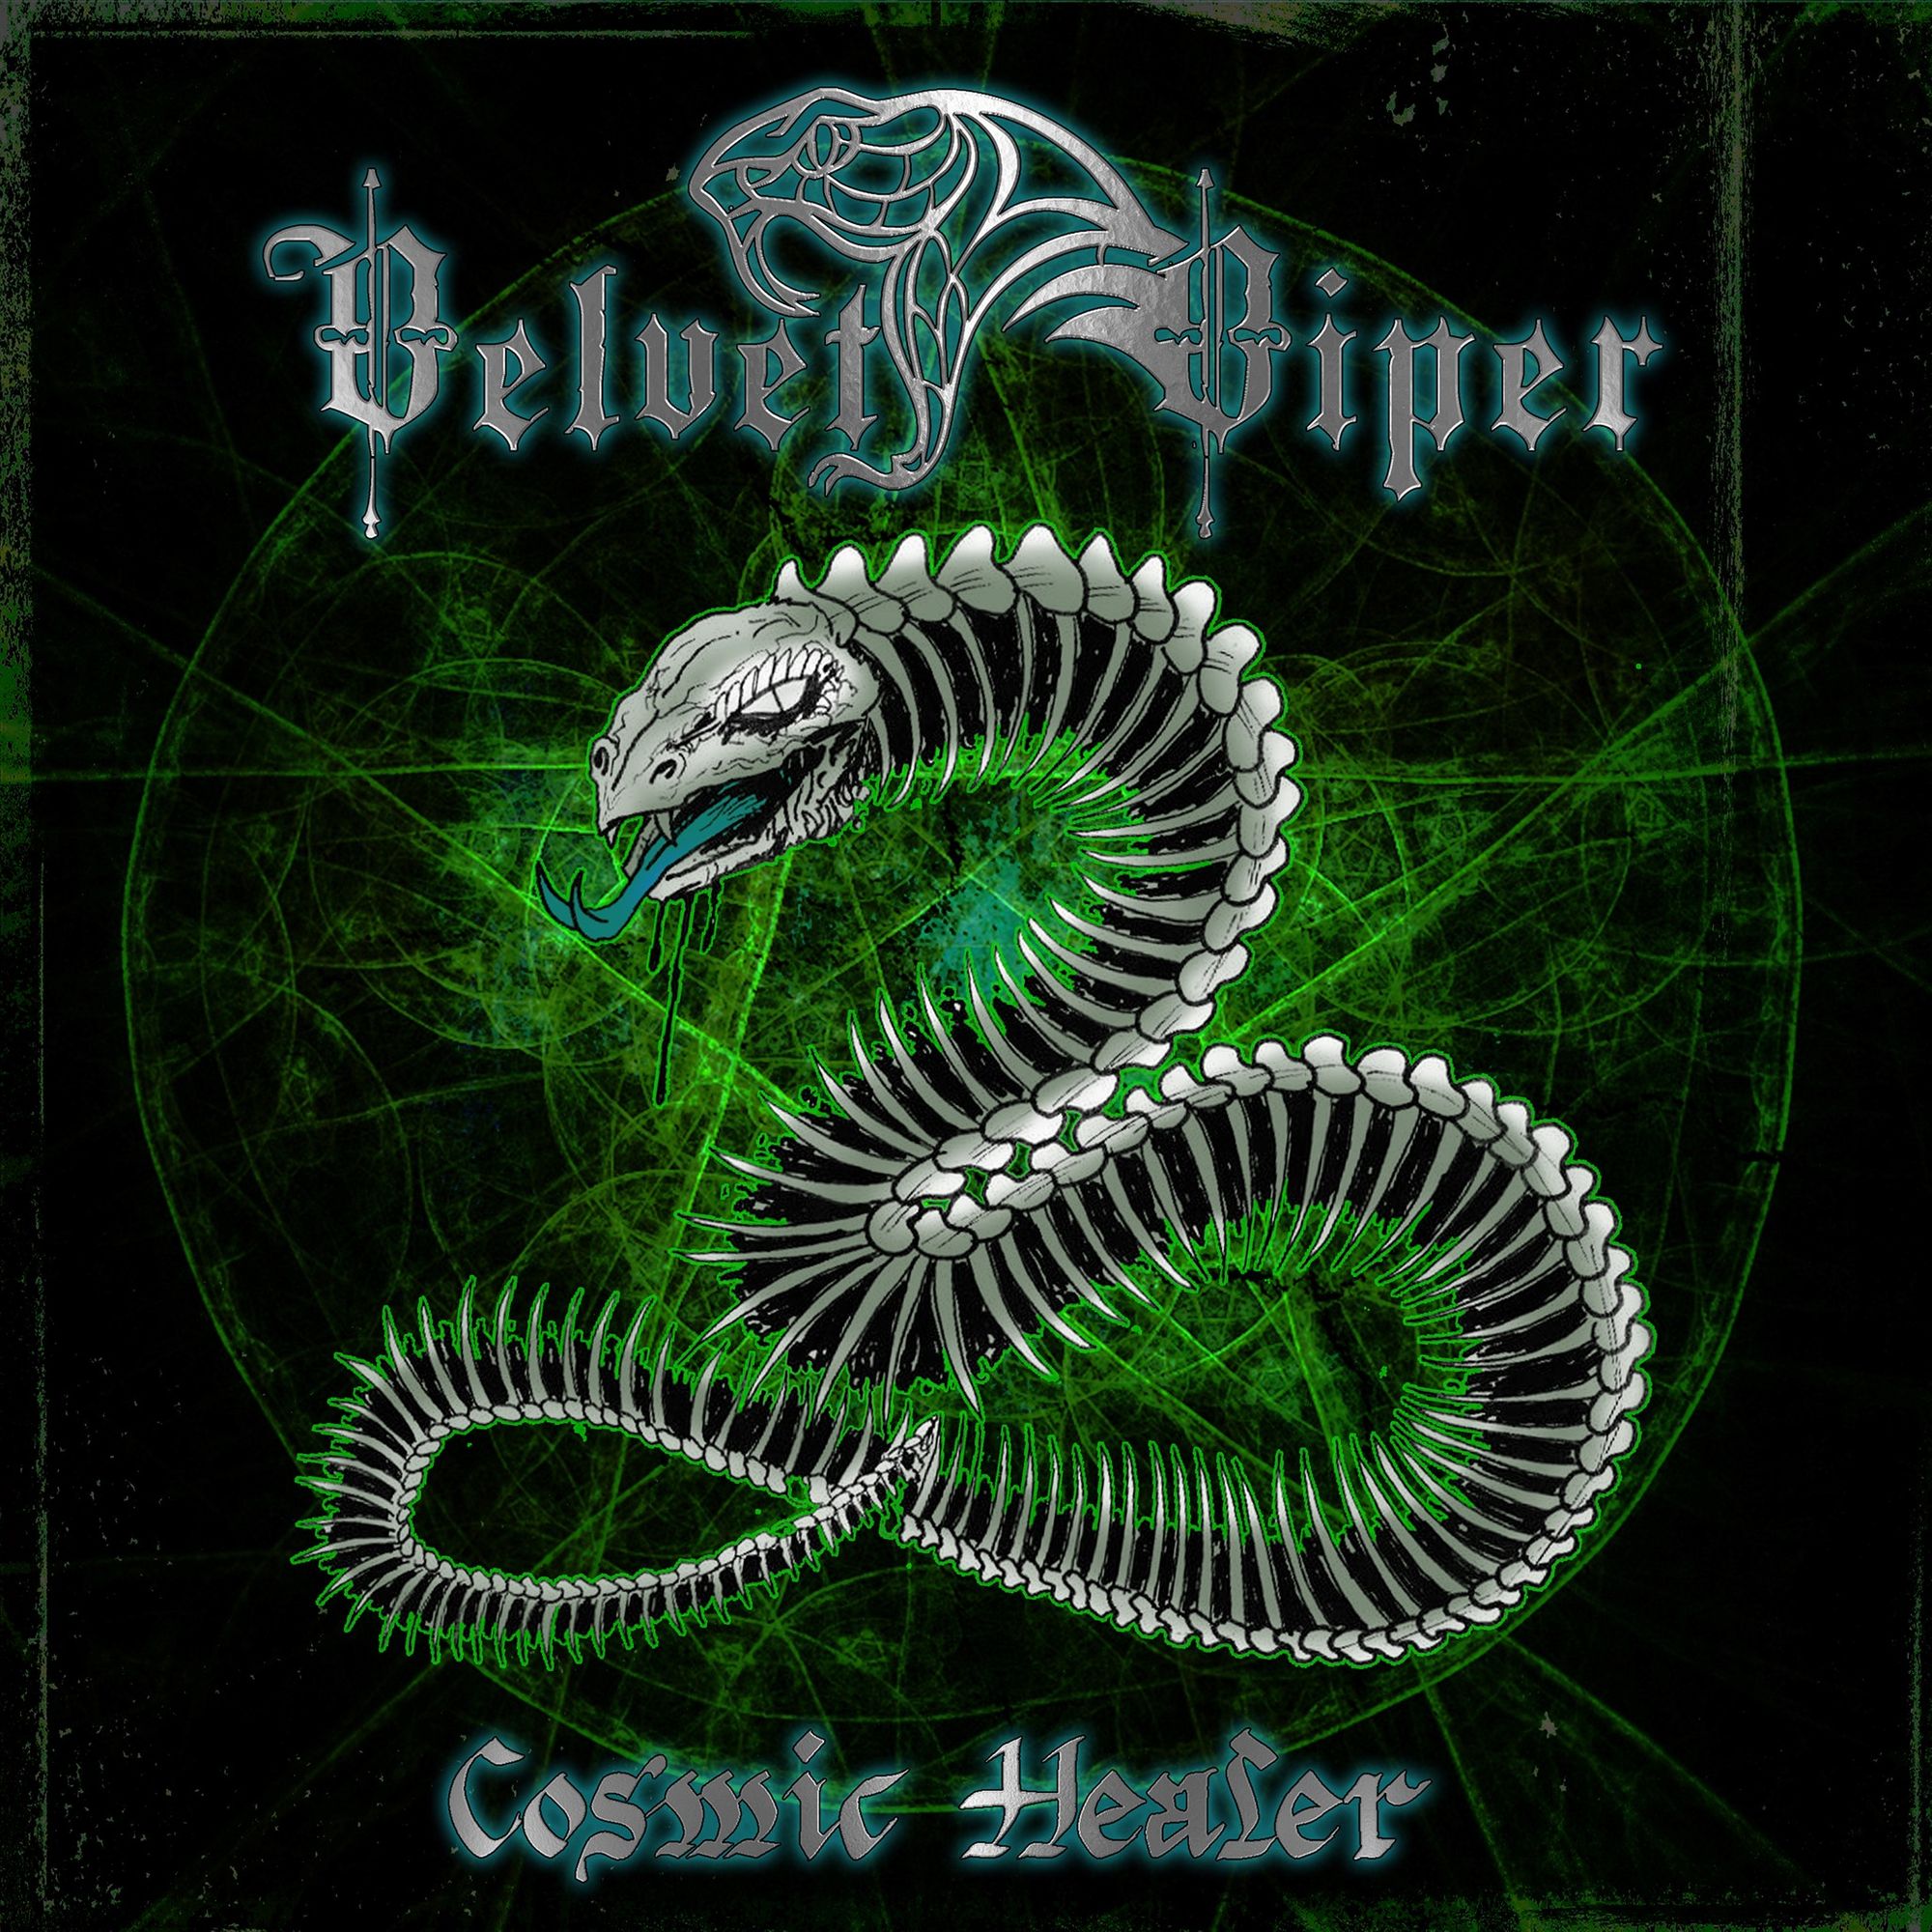 Velvet Viper - Holy Snake Mother (clip)